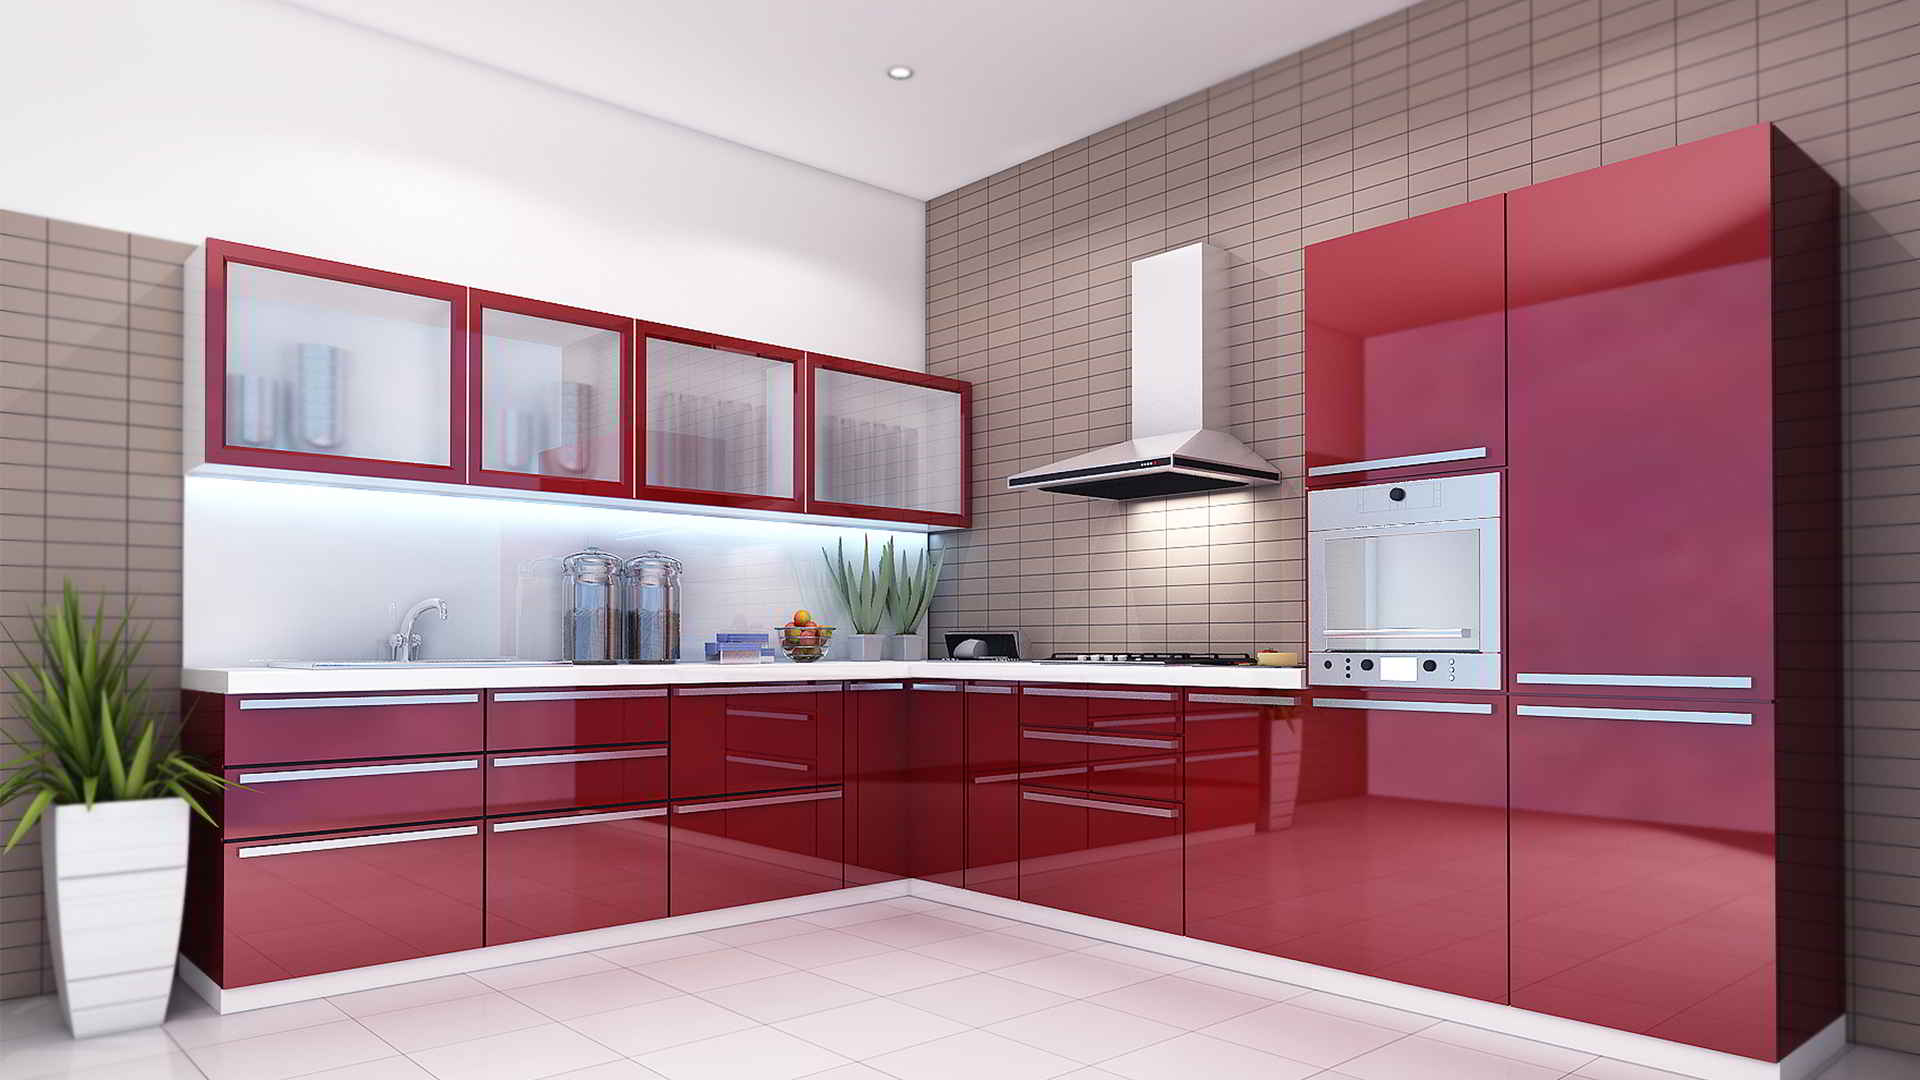 kitchen design hd photos